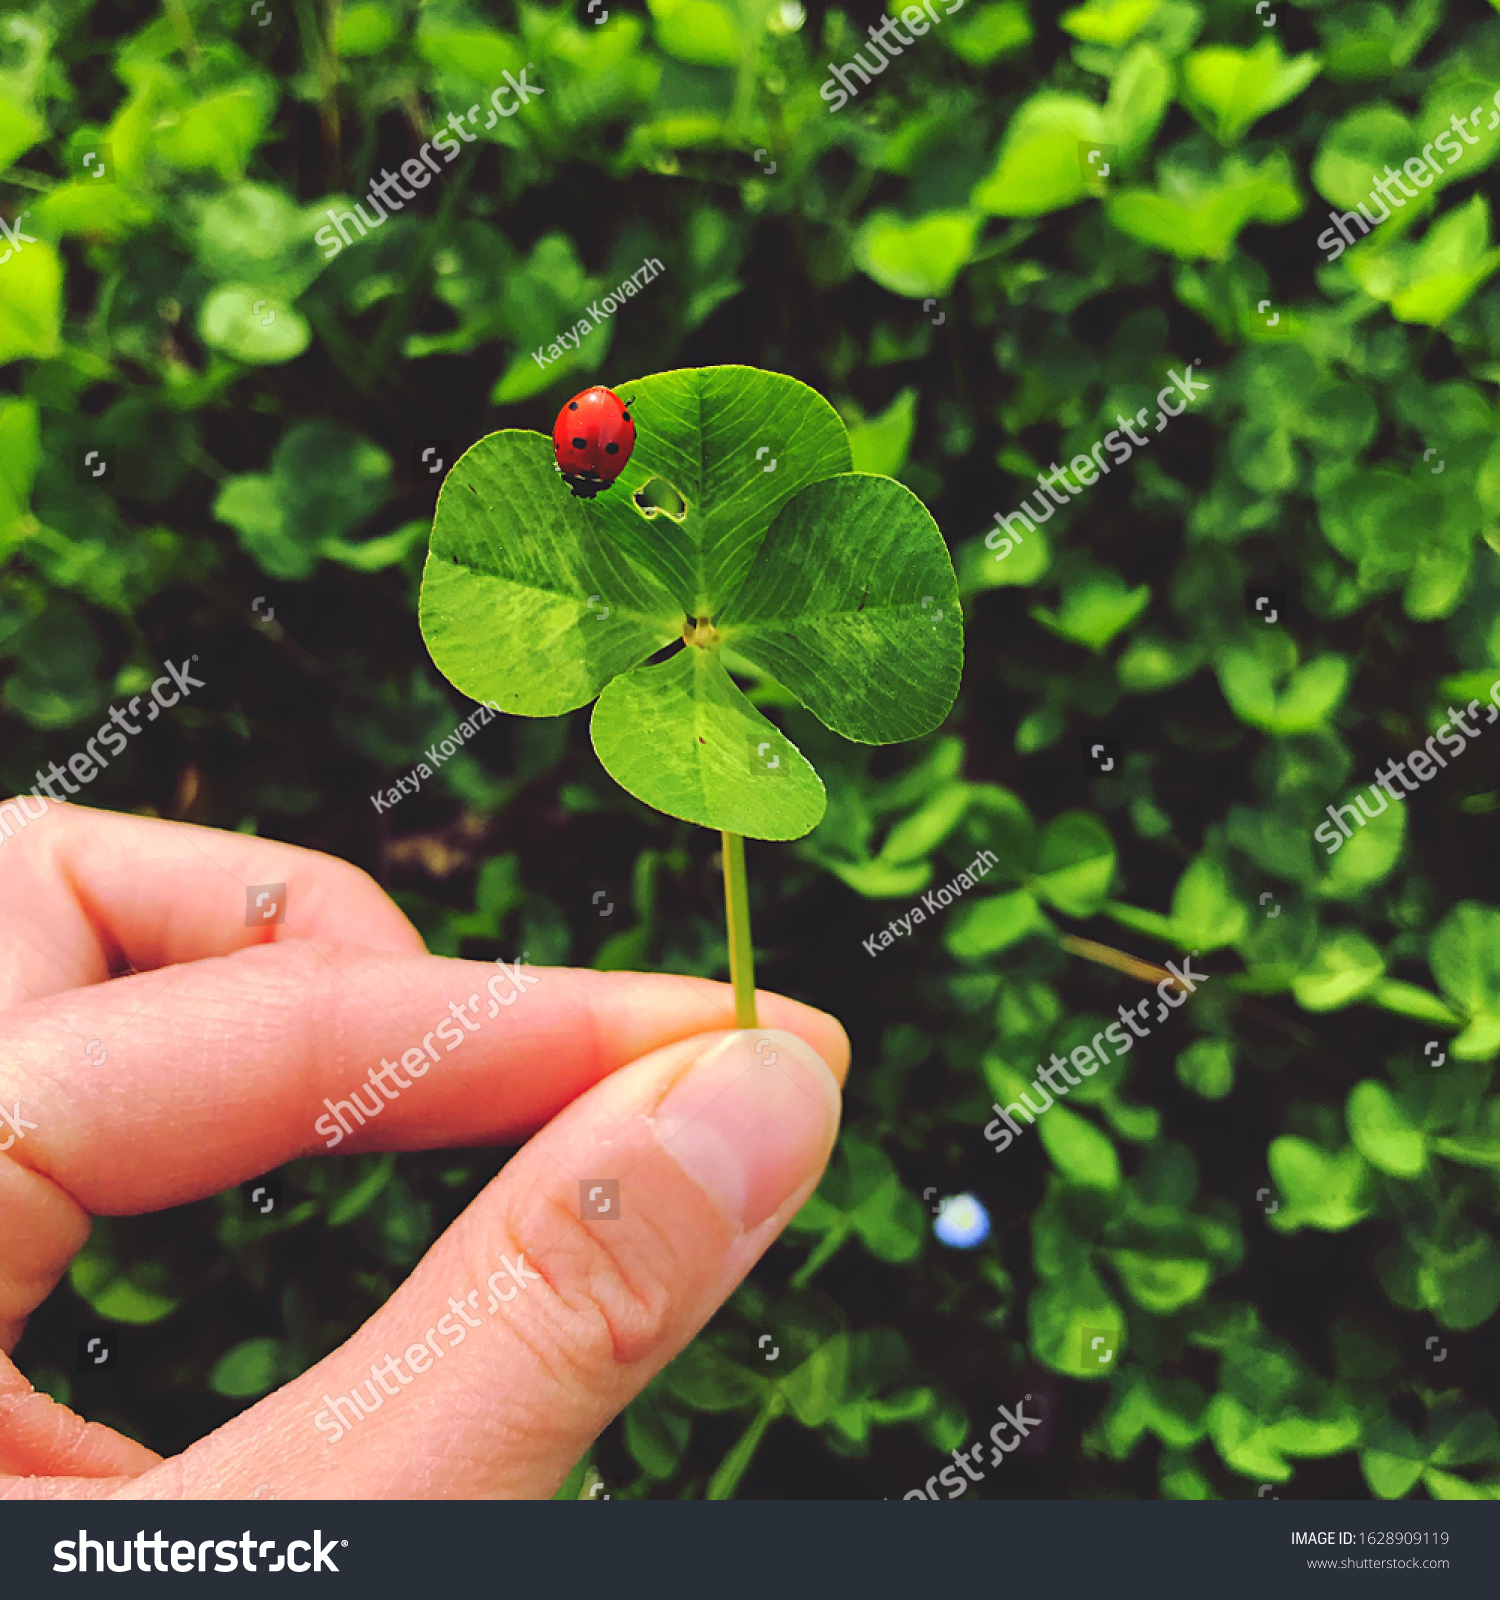 Four-leaf clover with a ladybug. Lucky charm. #1628909119